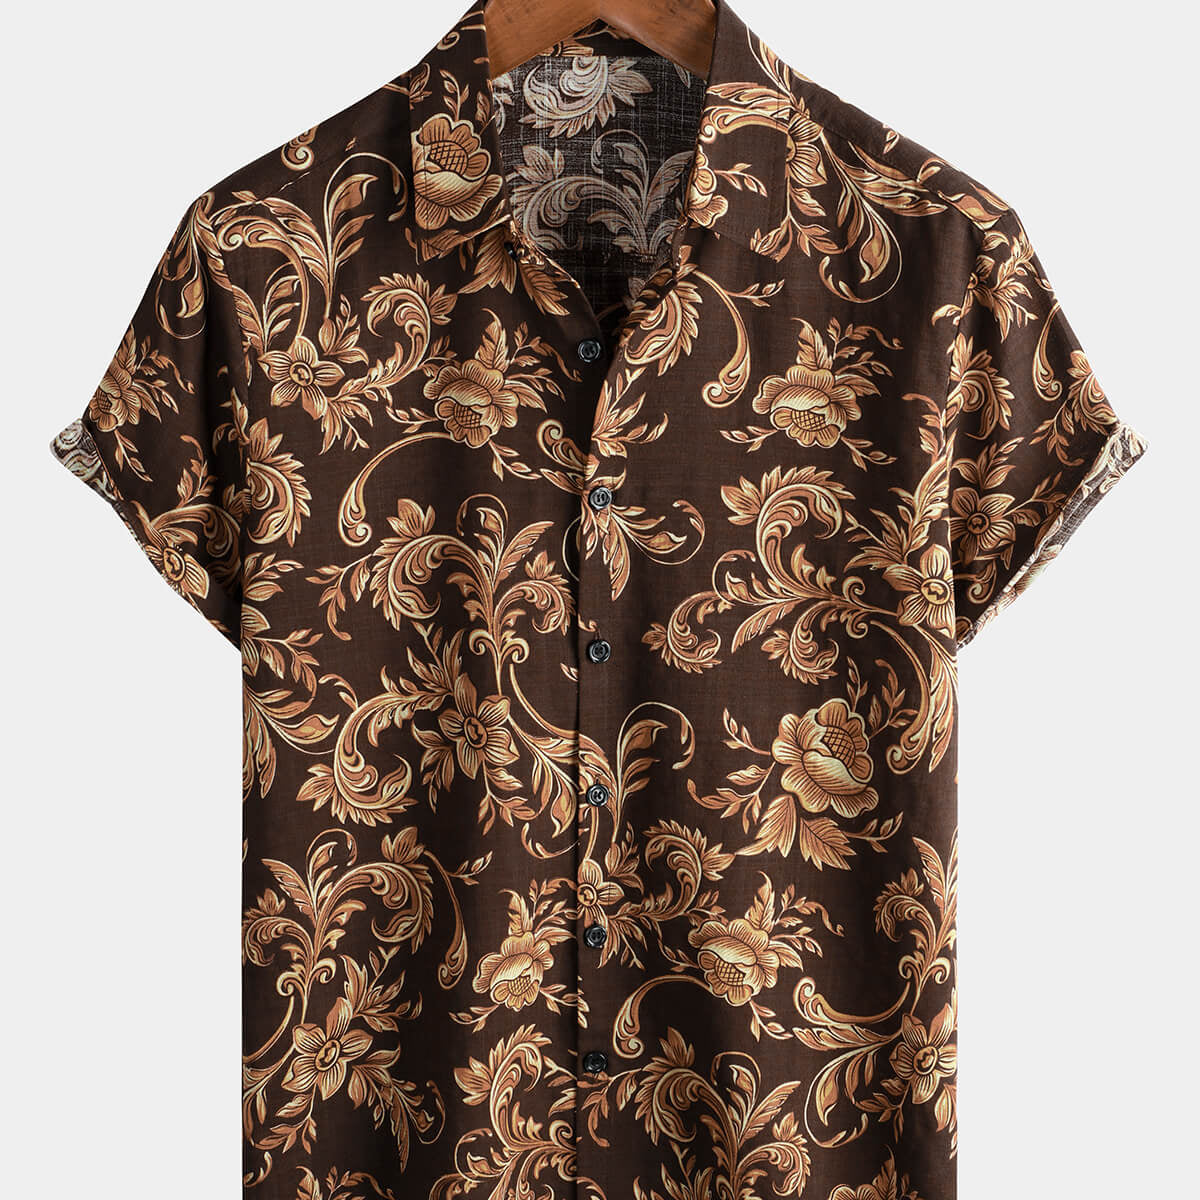 Camisa de manga corta floral vintage marrón con botones para hombre con estampado barroco fresco para vacaciones de verano en la playa